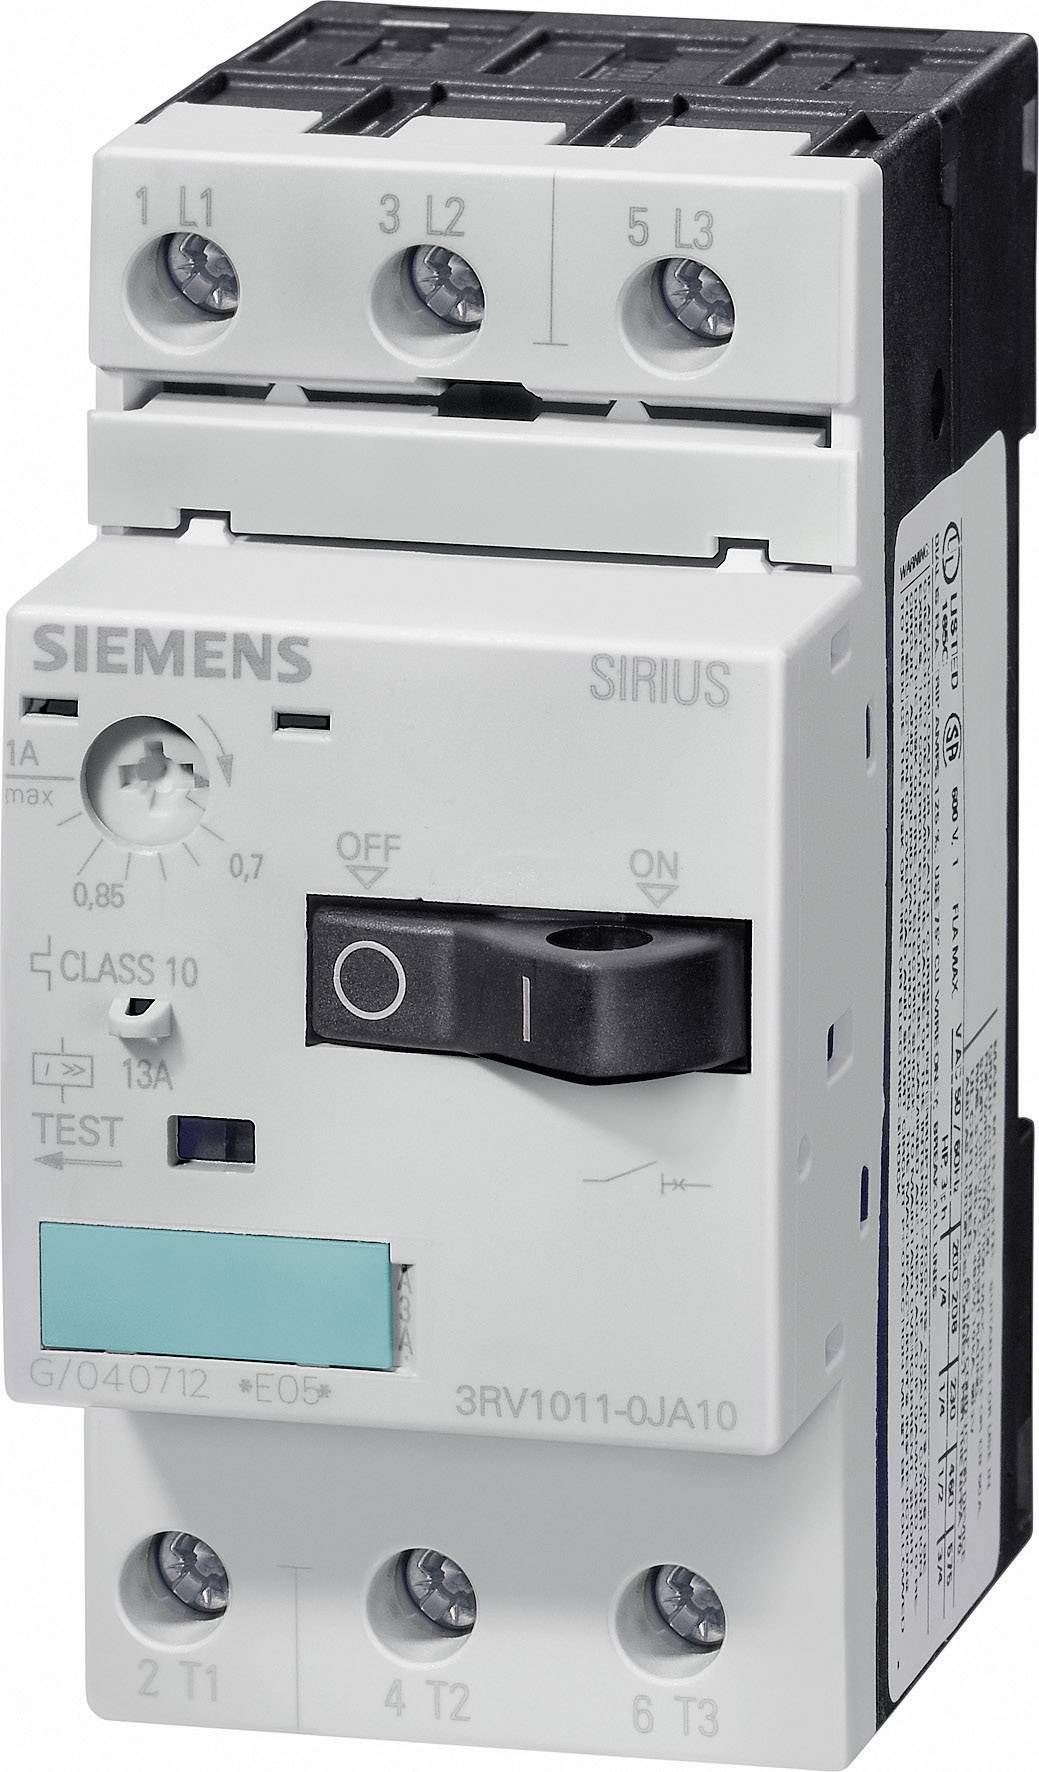 SIEMENS FURNAS ELECTRIC CO 3RV1011-0JA10 CIRCUIT BREAKER